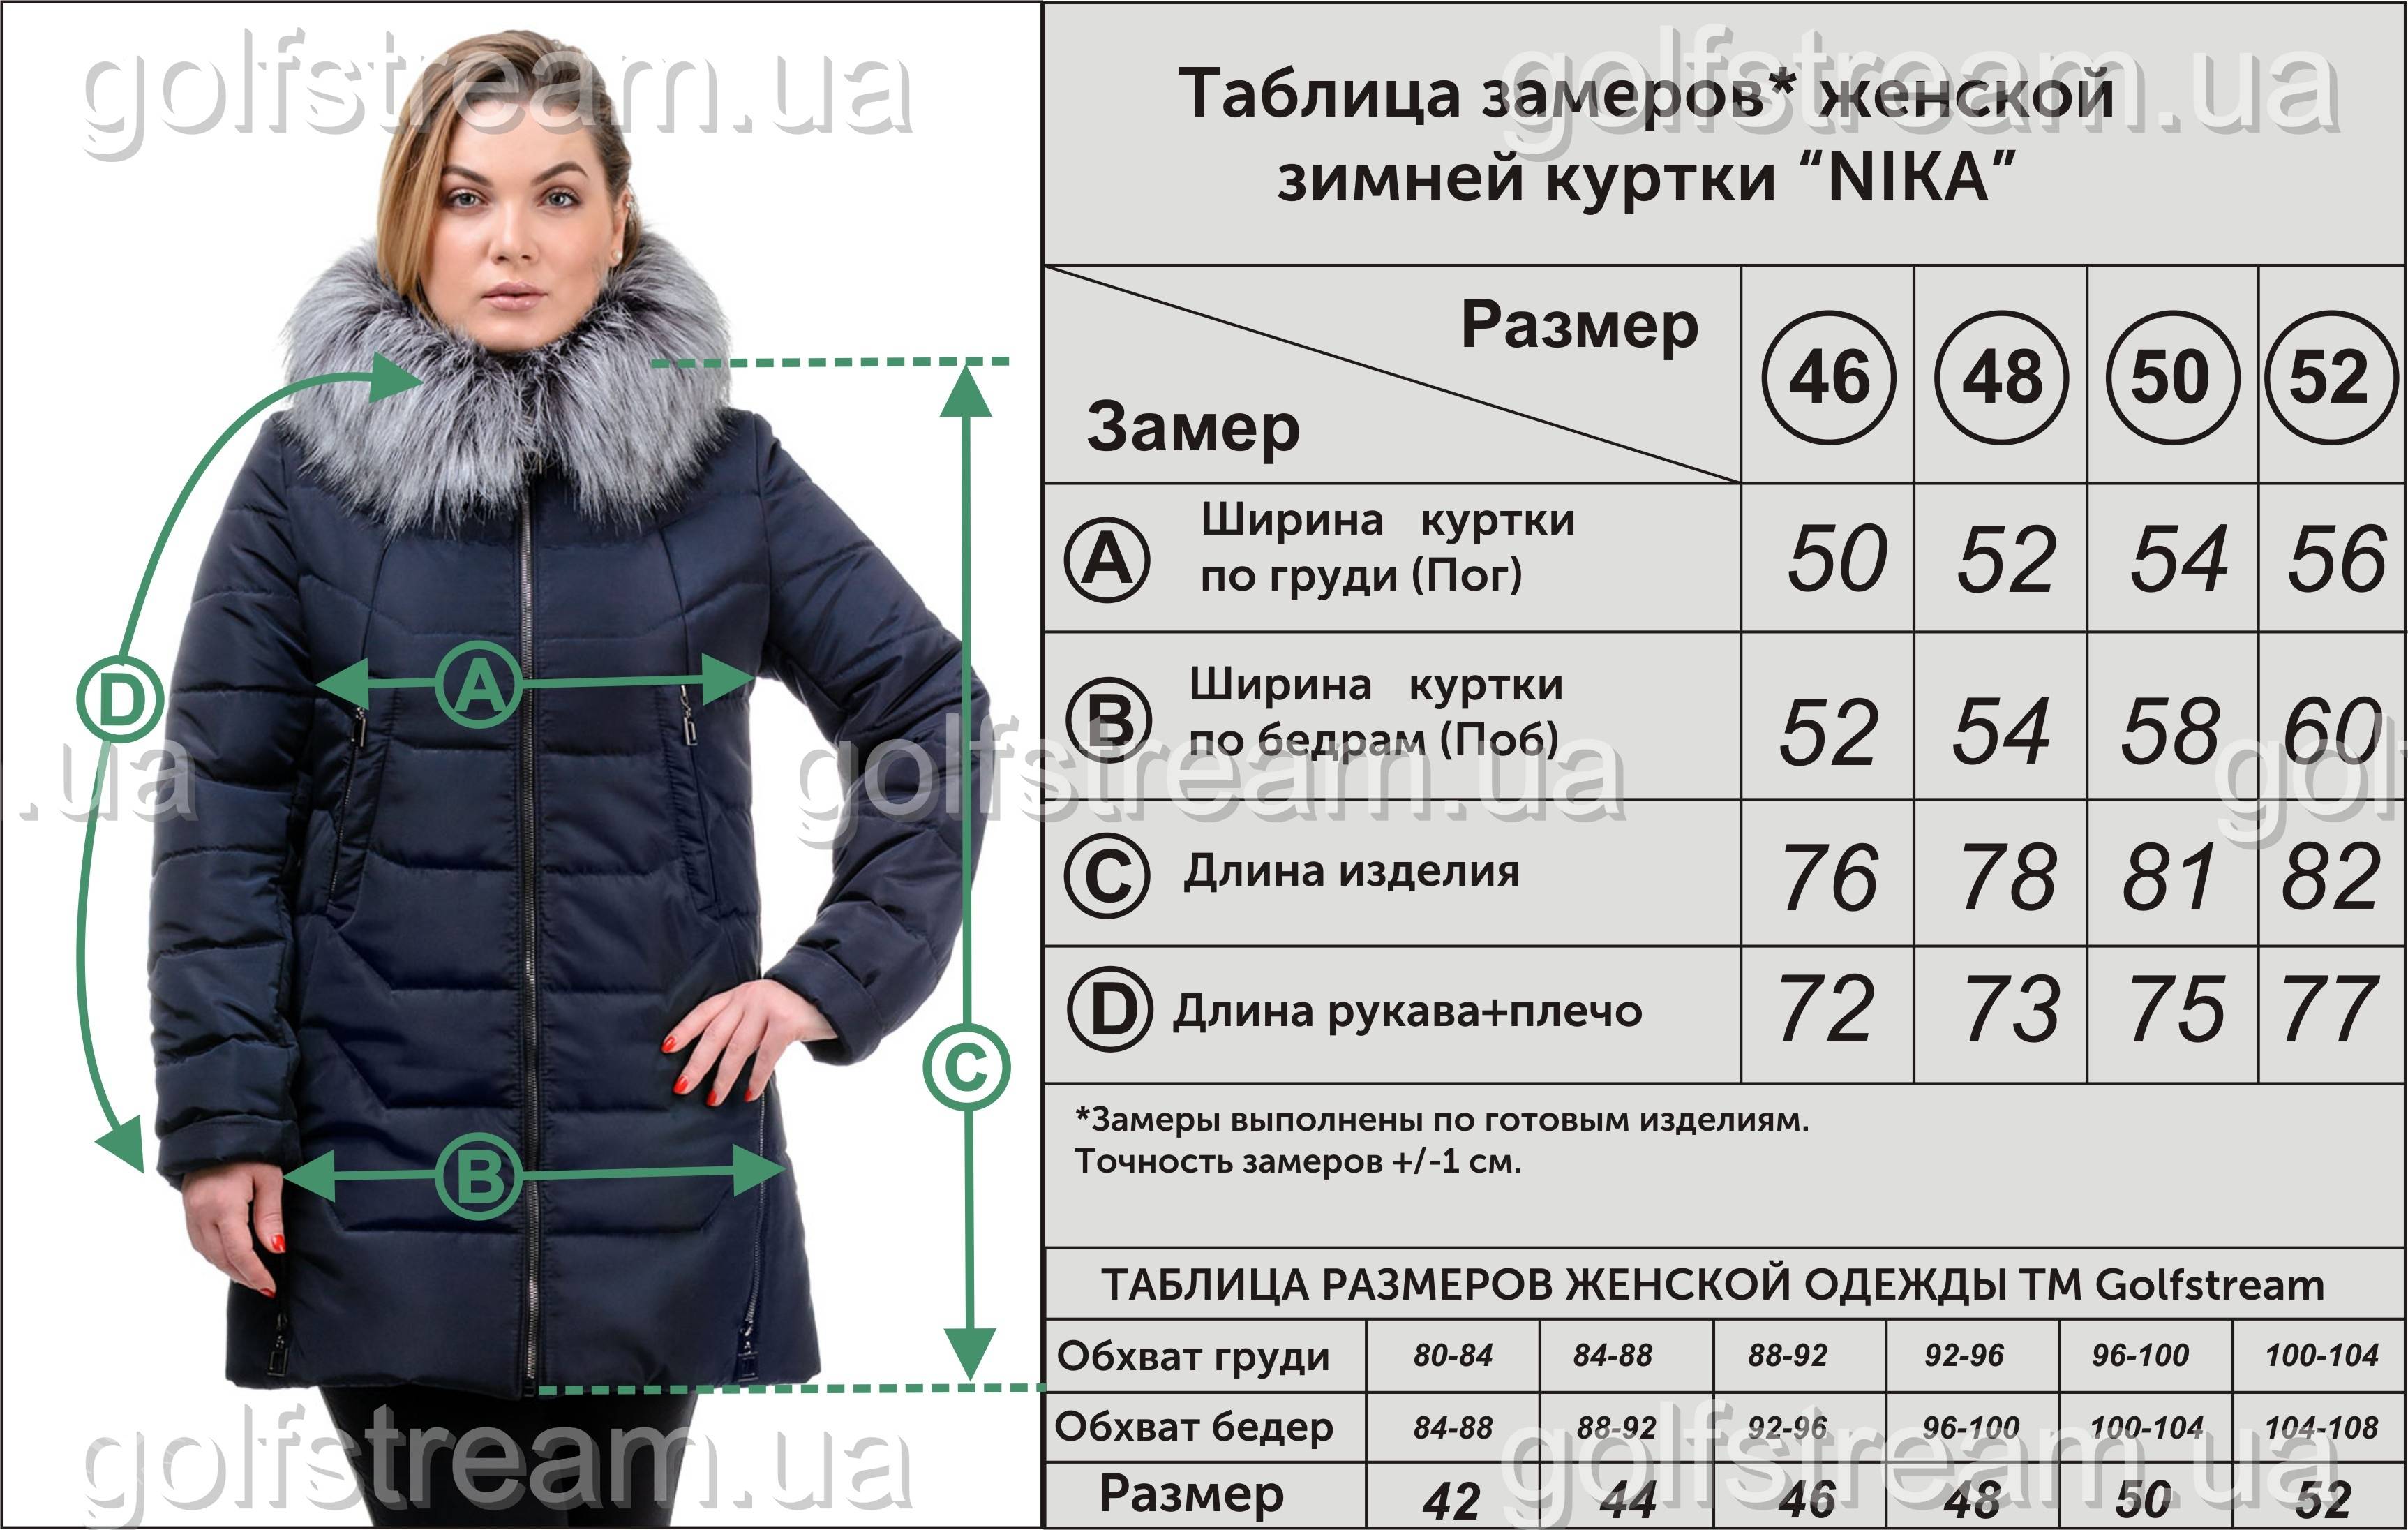 Как выбрать пуховик на зиму женский по фигуре, размеру, качеству? | allbreakingnews.ru